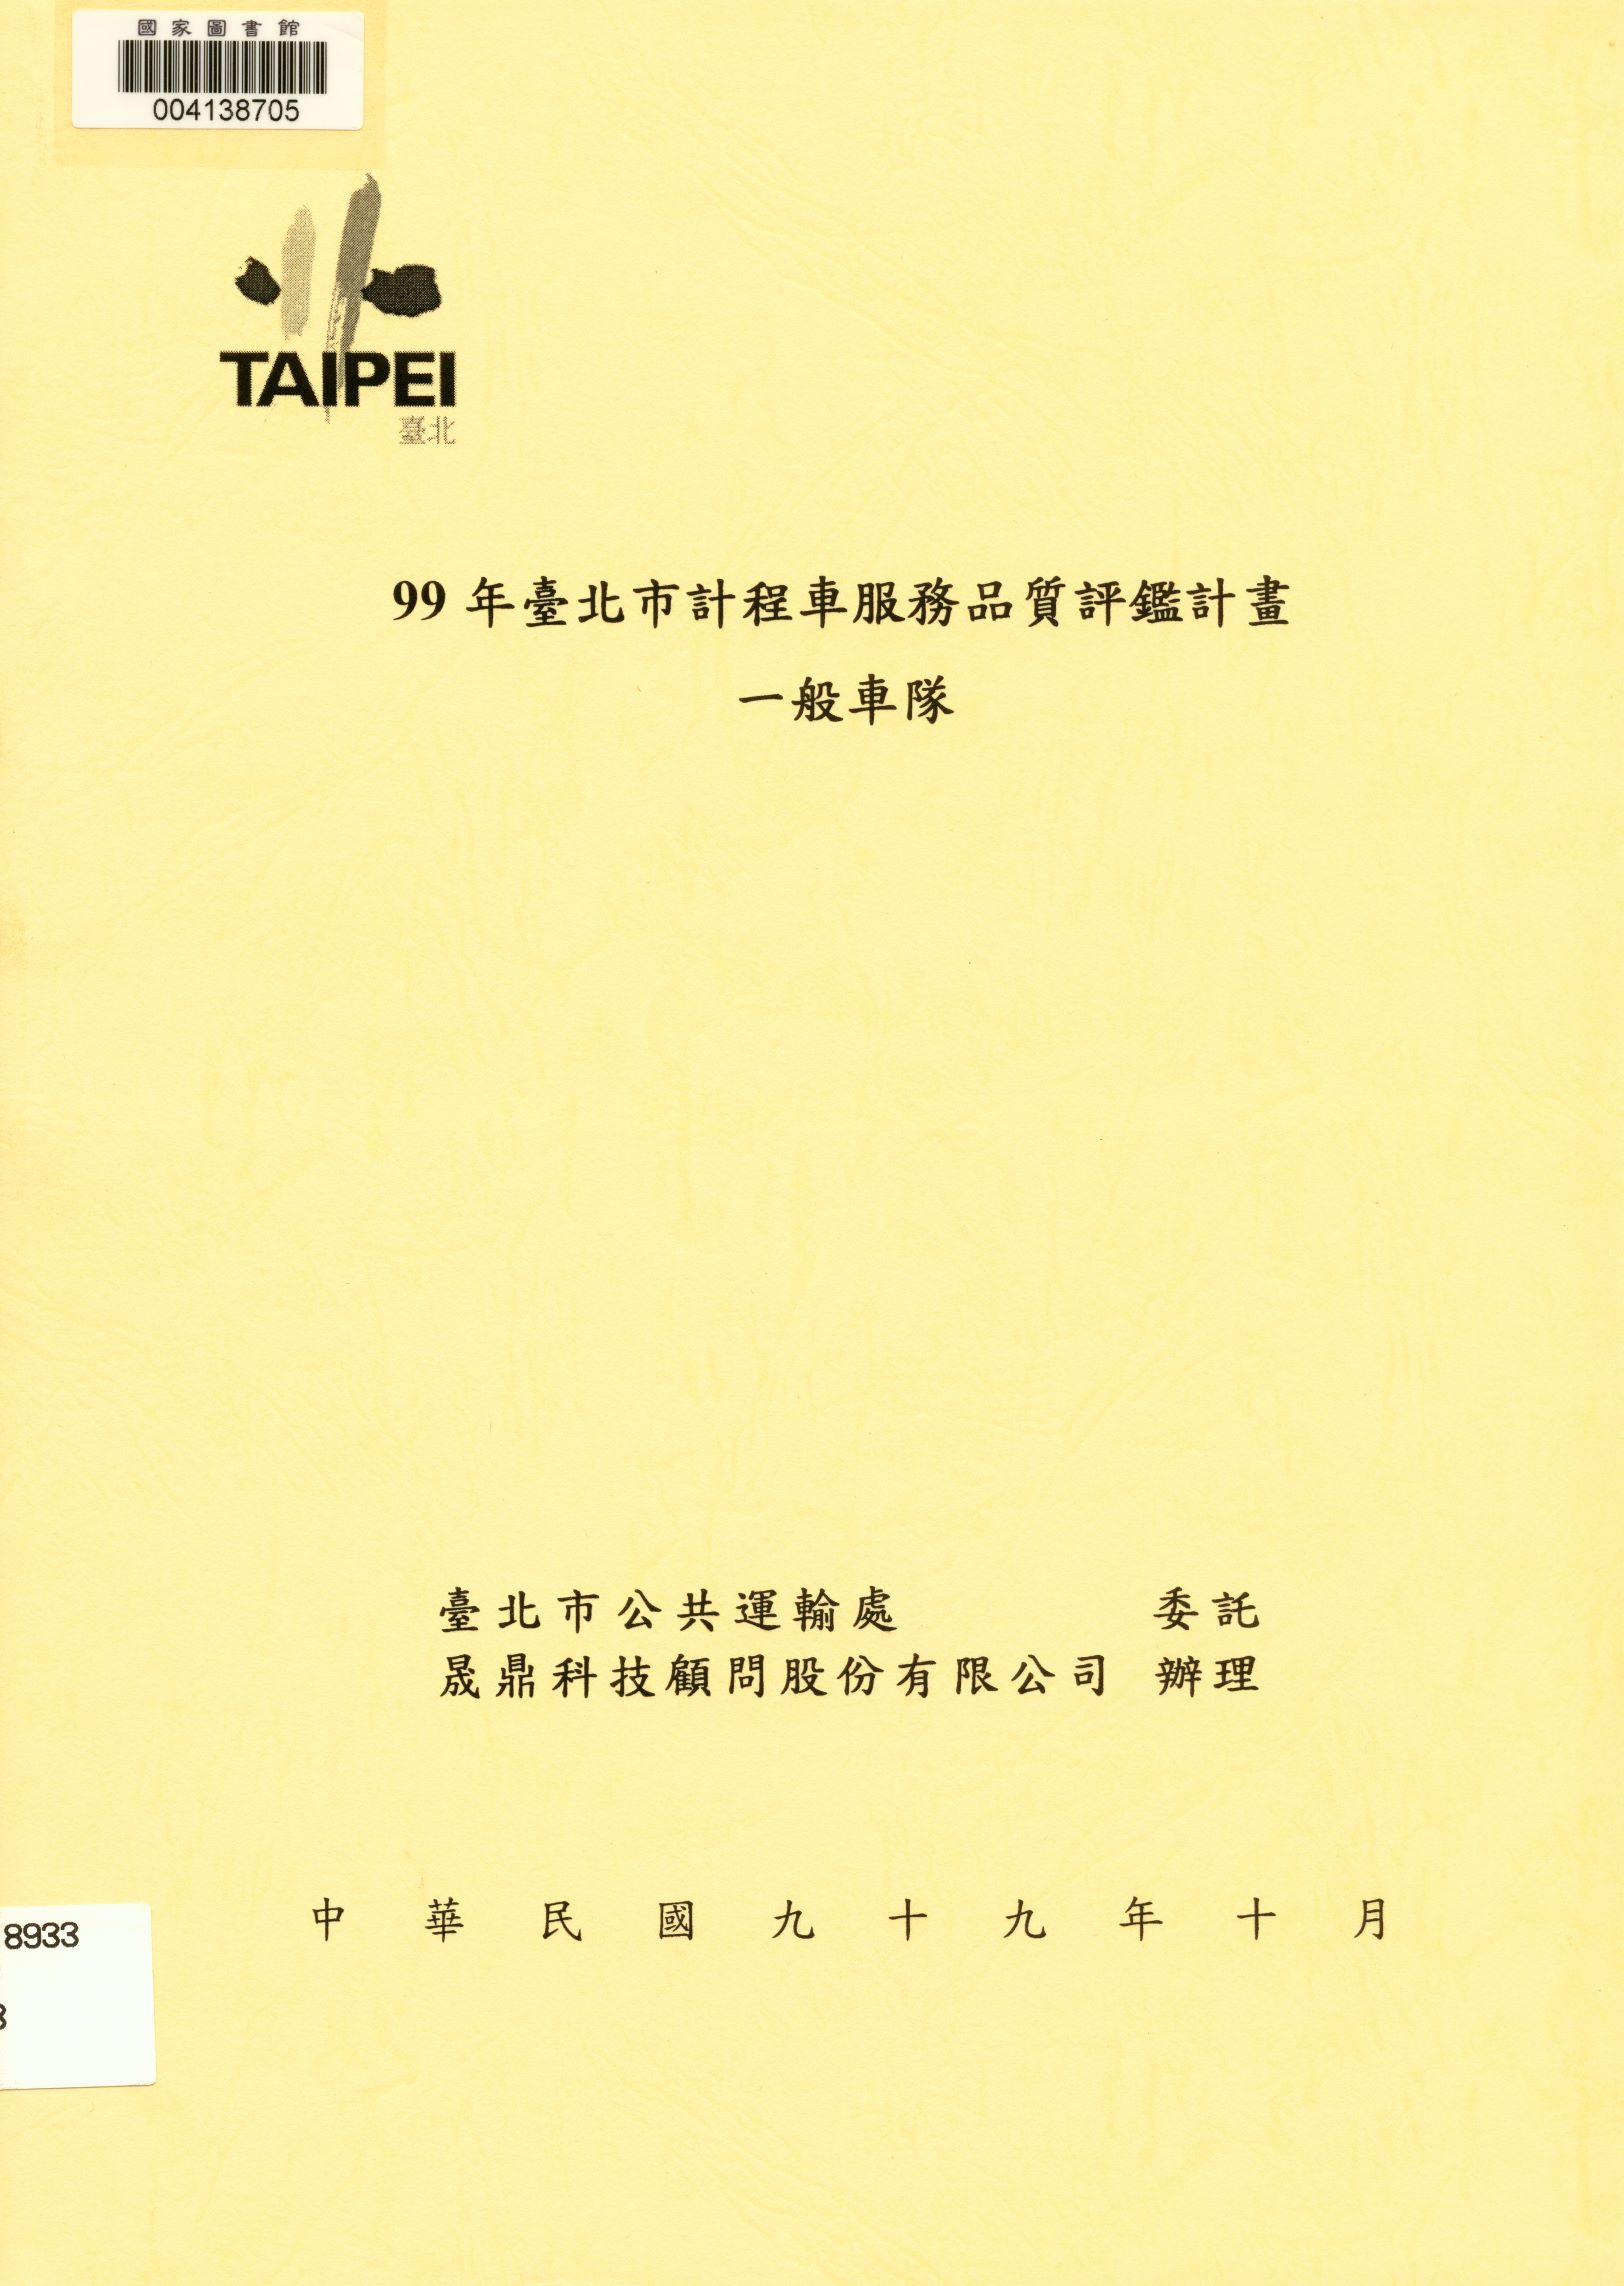 99年臺北市計程車服務品質評鑑計畫-一般車隊